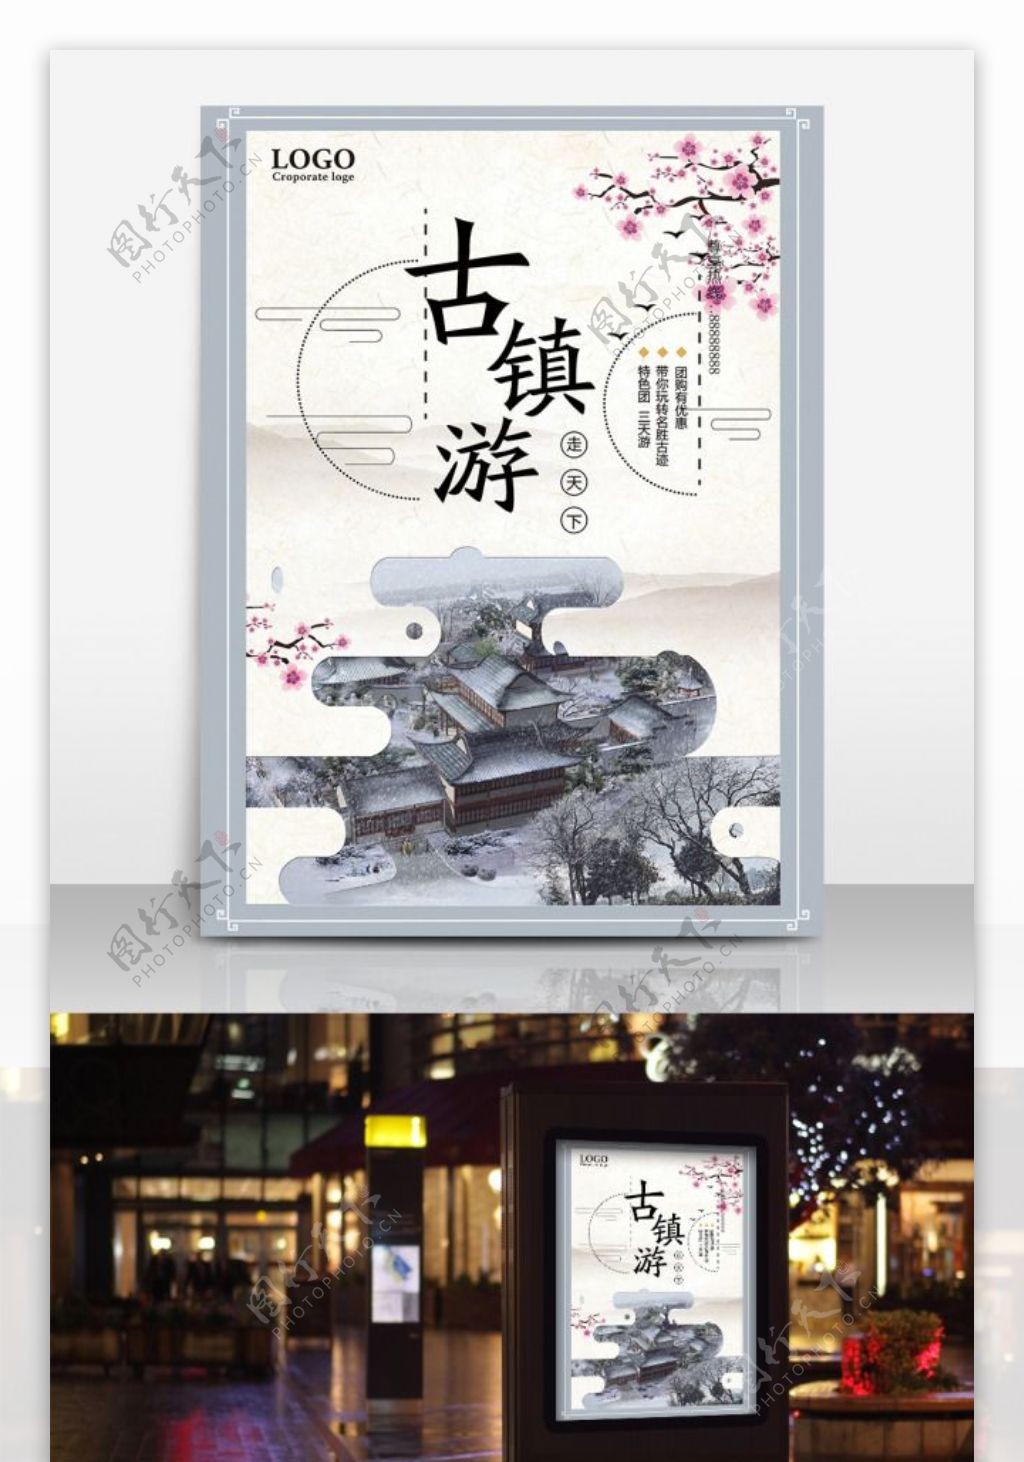 中国风古风古镇游旅行社宣传海报设计